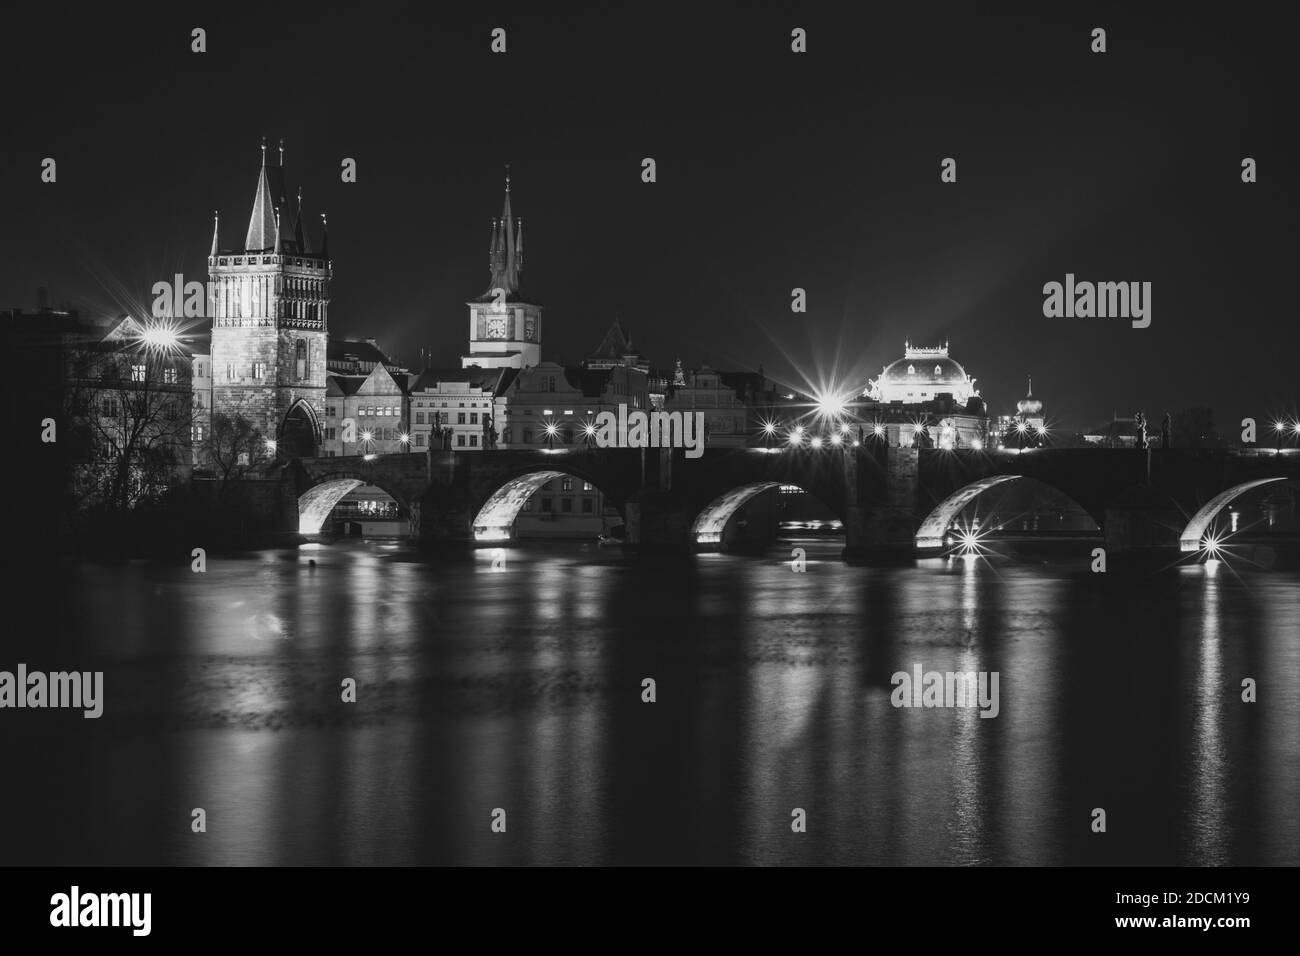 Abendpanorama von Prag, Tschechische Republik. Schwarzweiß-Foto. Karlsbrücke, Karluv spiegelt sich am meisten in der Moldau. Stadtlichter mit langer Belichtung Stockfoto